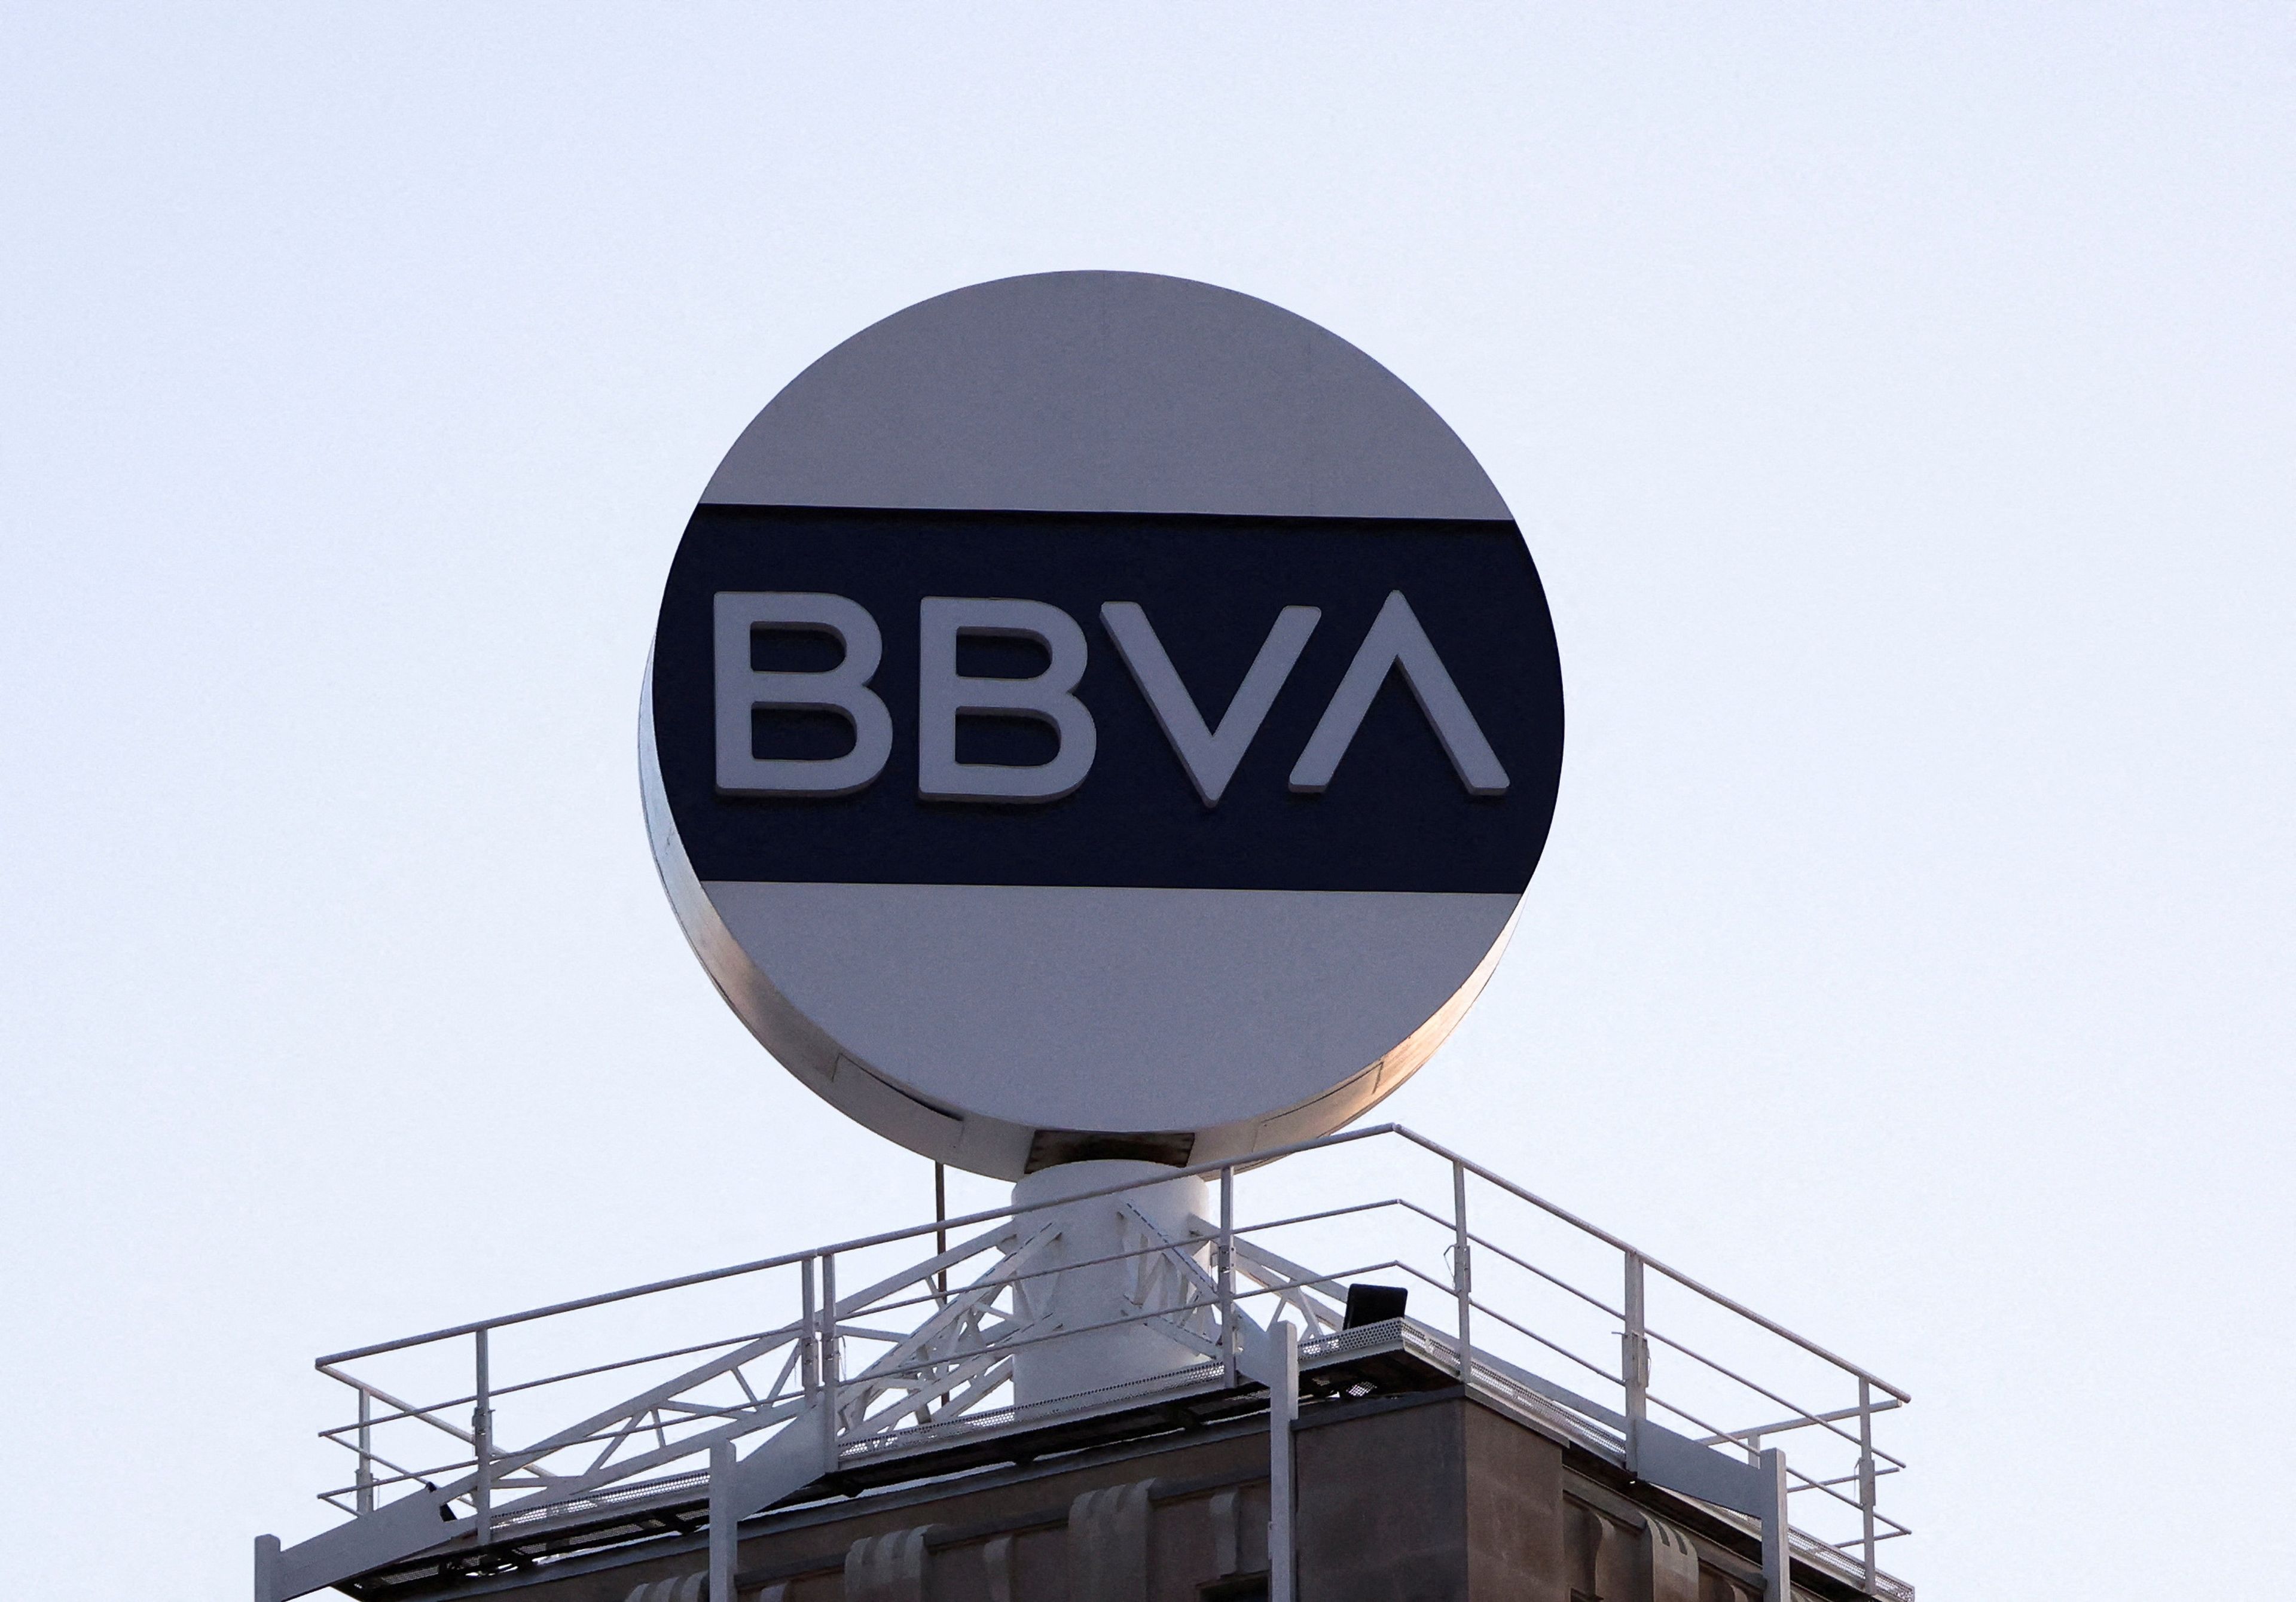 La foto del día: El BBVA ha comunicado a la CNMV este jueves que lanza una oferta pública de adquisición sobre el Sabadell al mismo precio que la propuesta amistosa de la semana pasada.